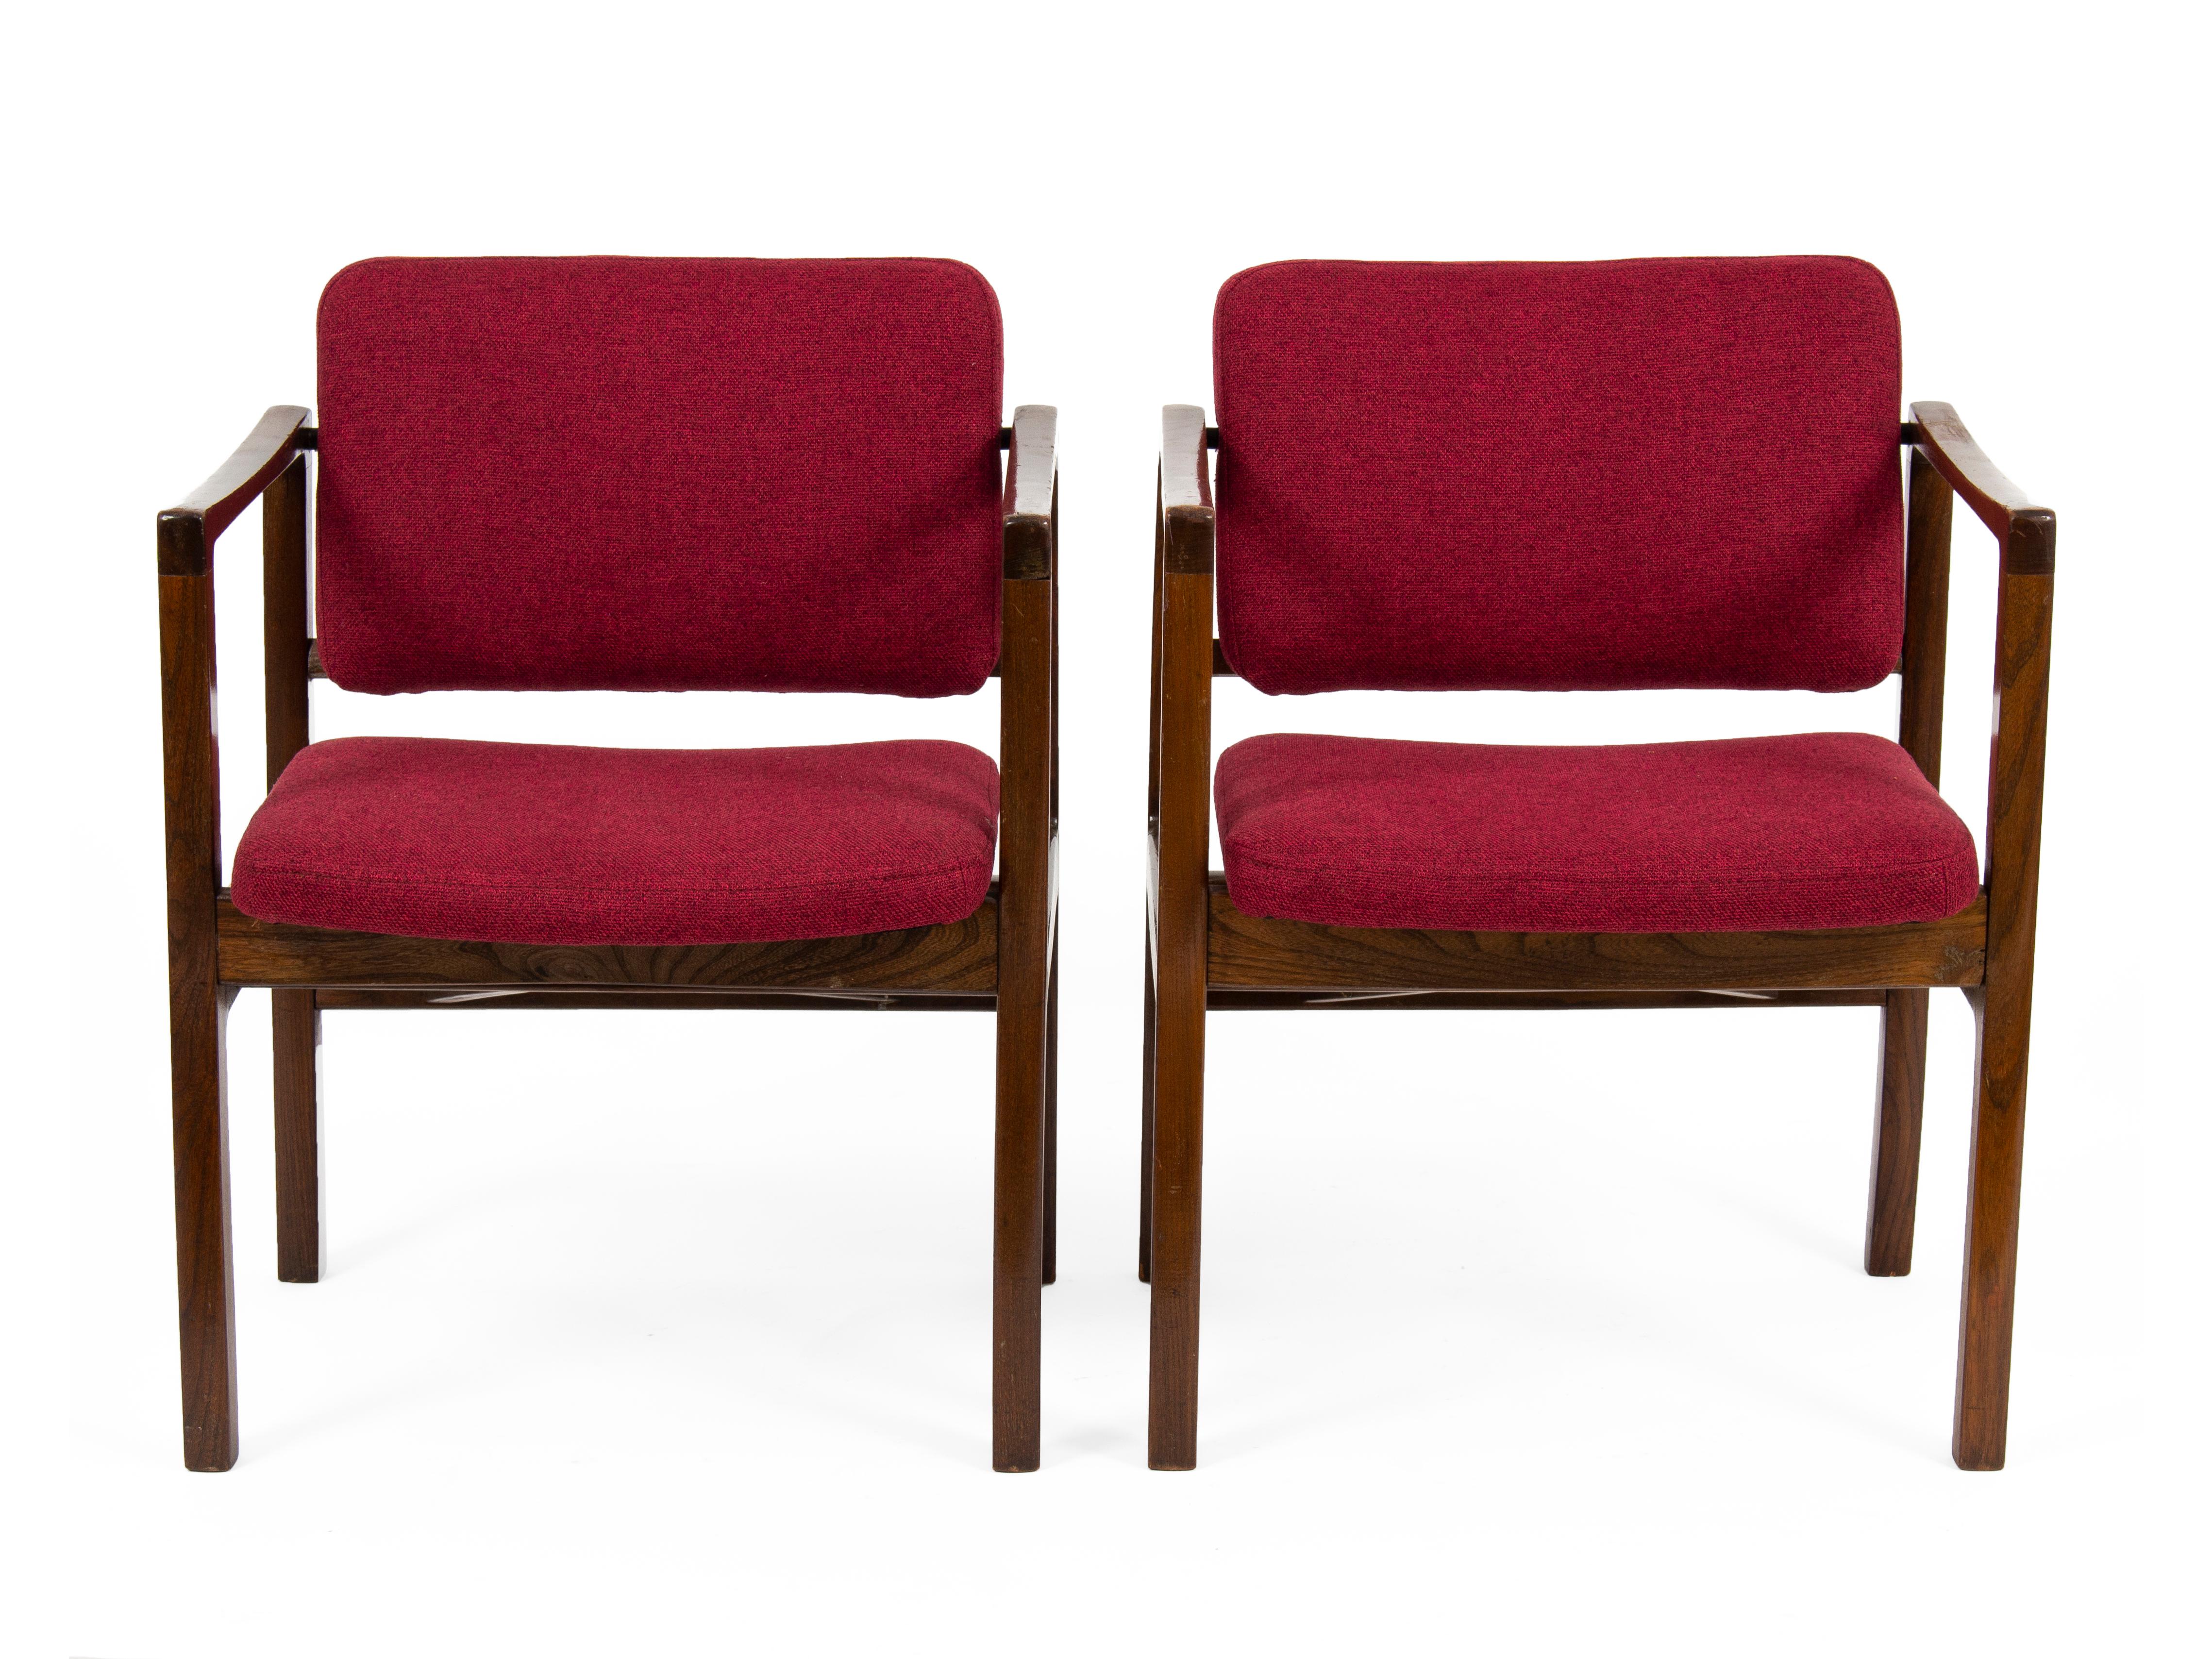 Cet ensemble de 8 chaises a été conçu et fabriqué dans les années 1970 en Tchécoslovaquie. Les fauteuils sont nouvellement retapissés.